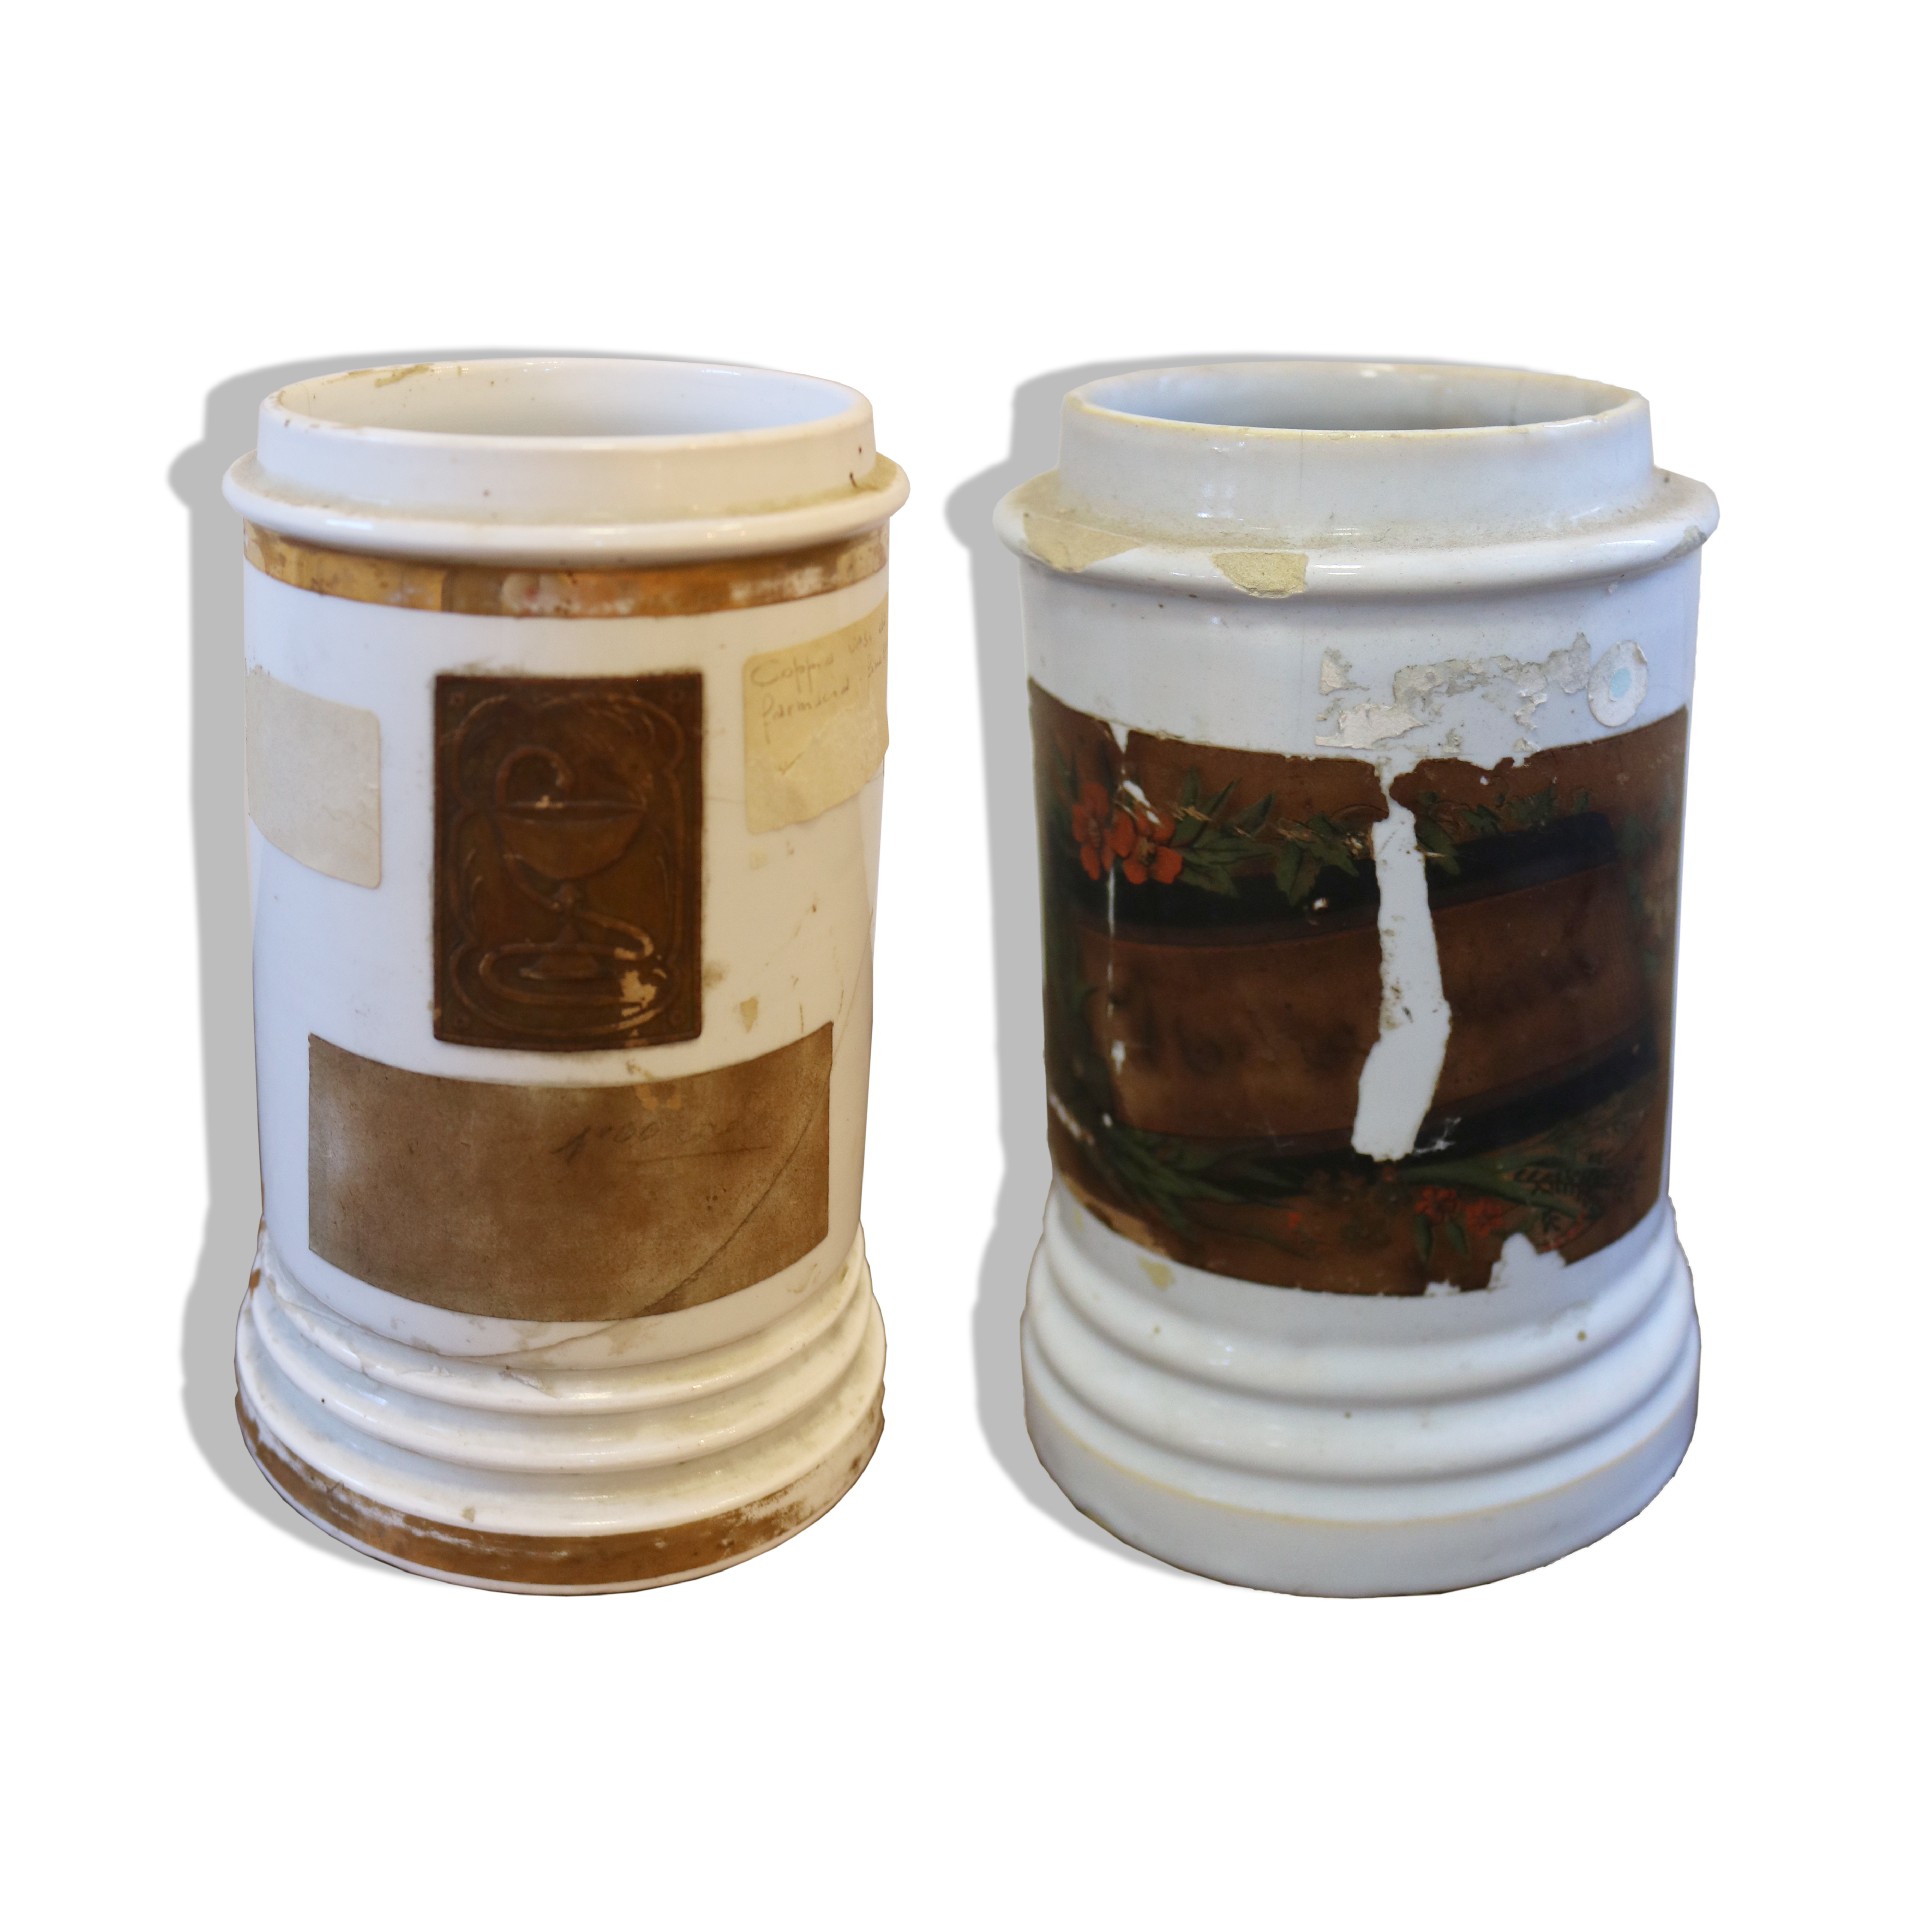 Antica coppia di vasi in maiolica. - Ceramiche - Oggettistica - Prodotti - Antichità Fiorillo